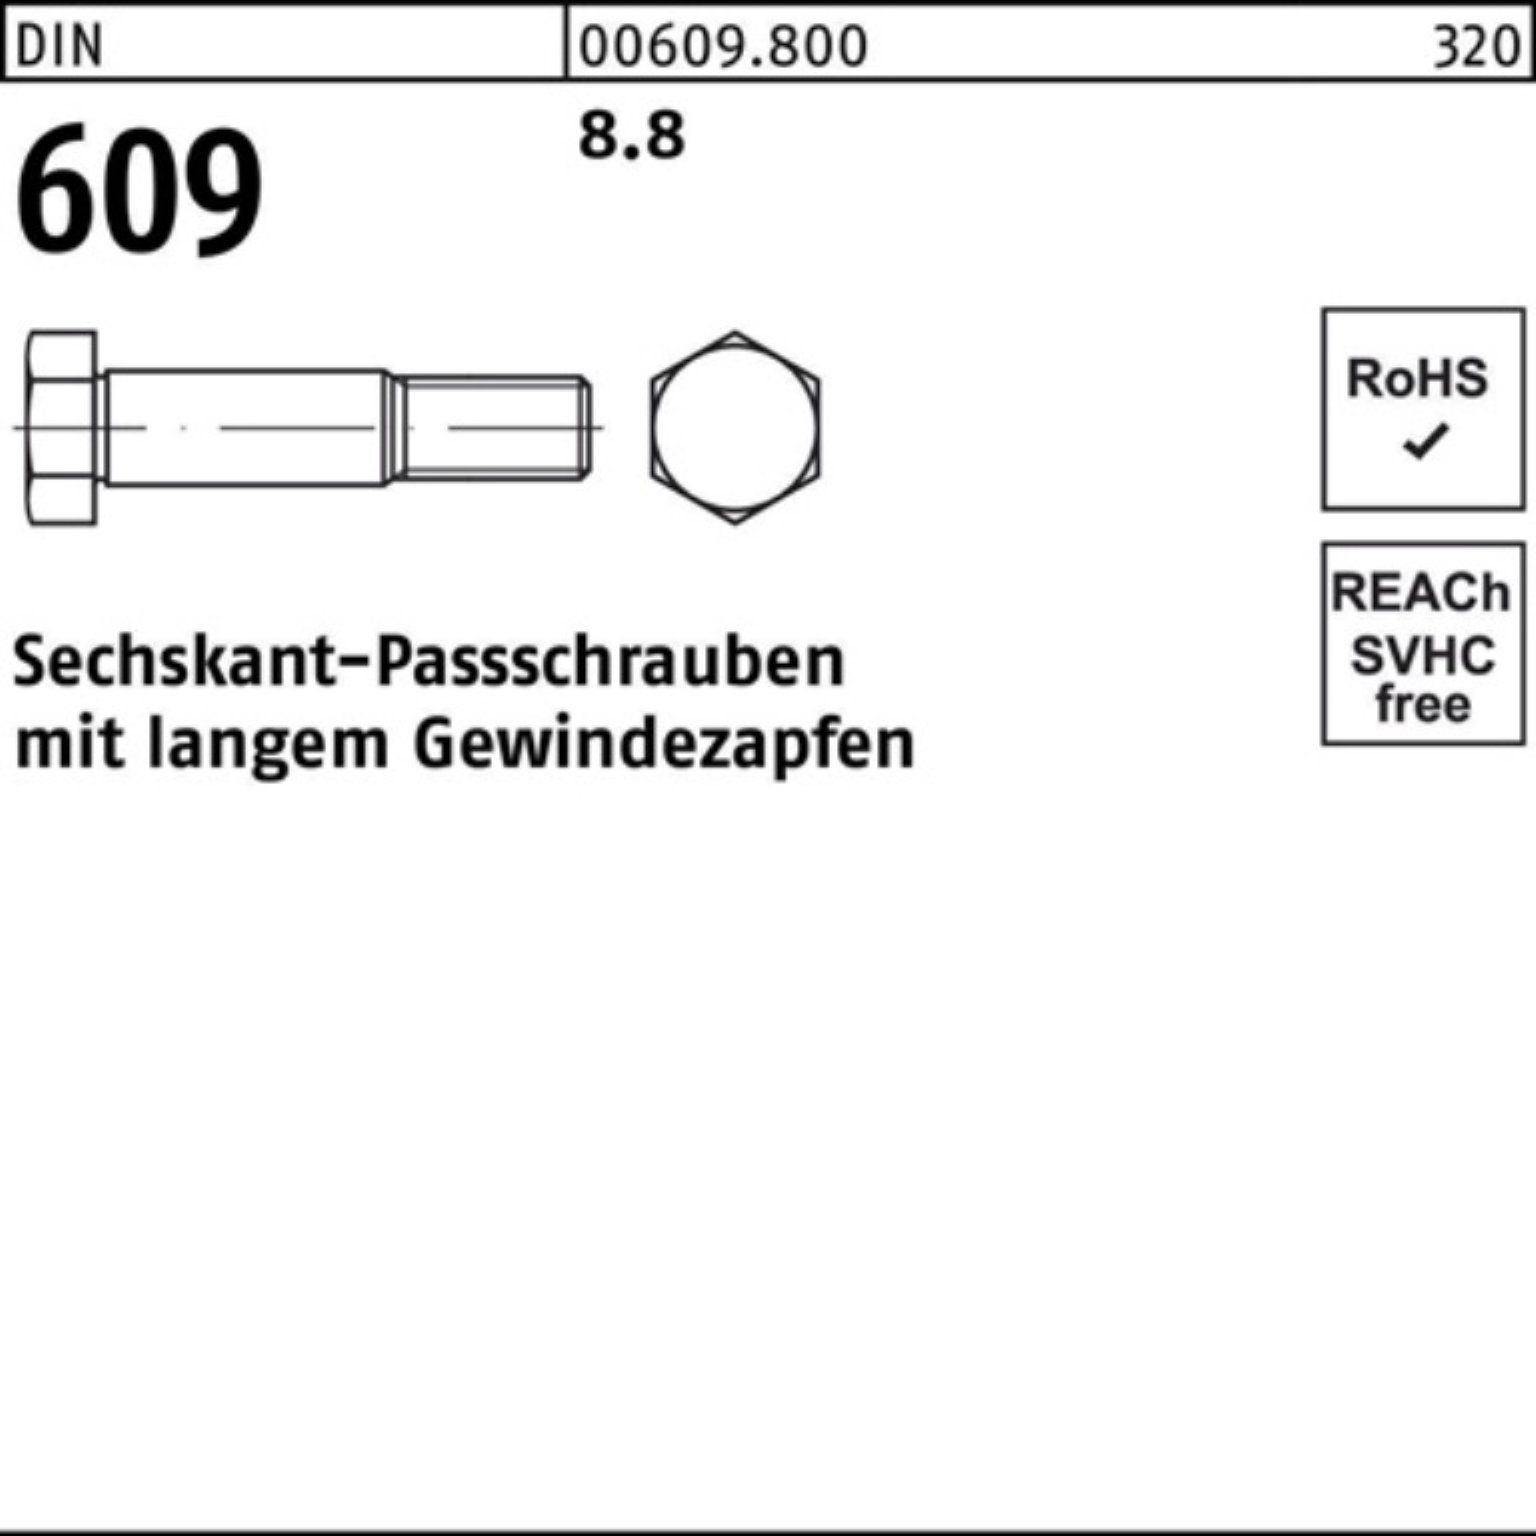 Sechskantpassschraube 70 M16x Schraube Gewindezapfen Pack 100er langem 609 DIN Reyher